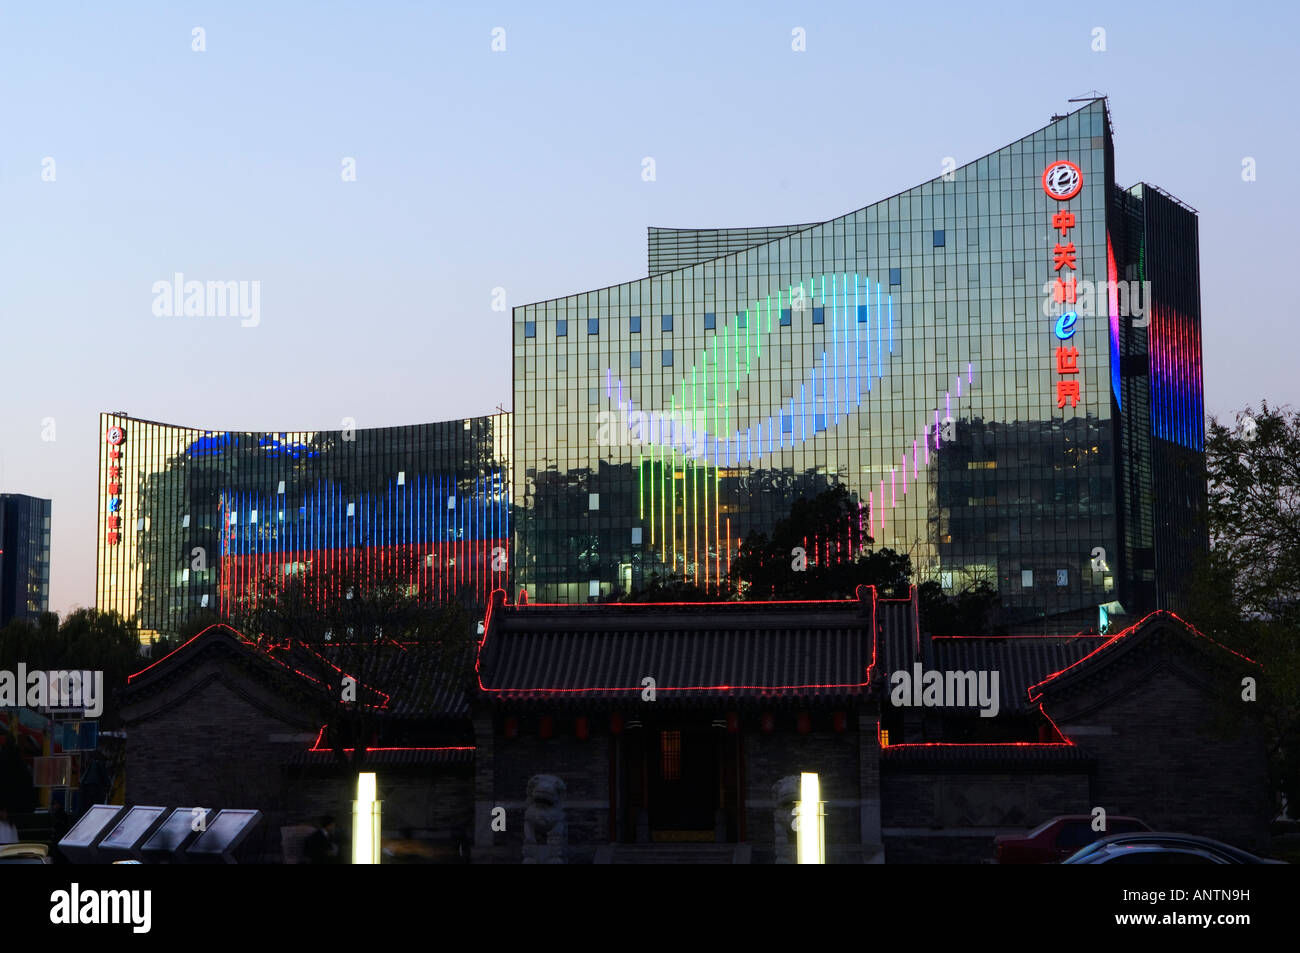 e plaza buildings in zhongguancun electronic shopping district beijing china Stock Photo